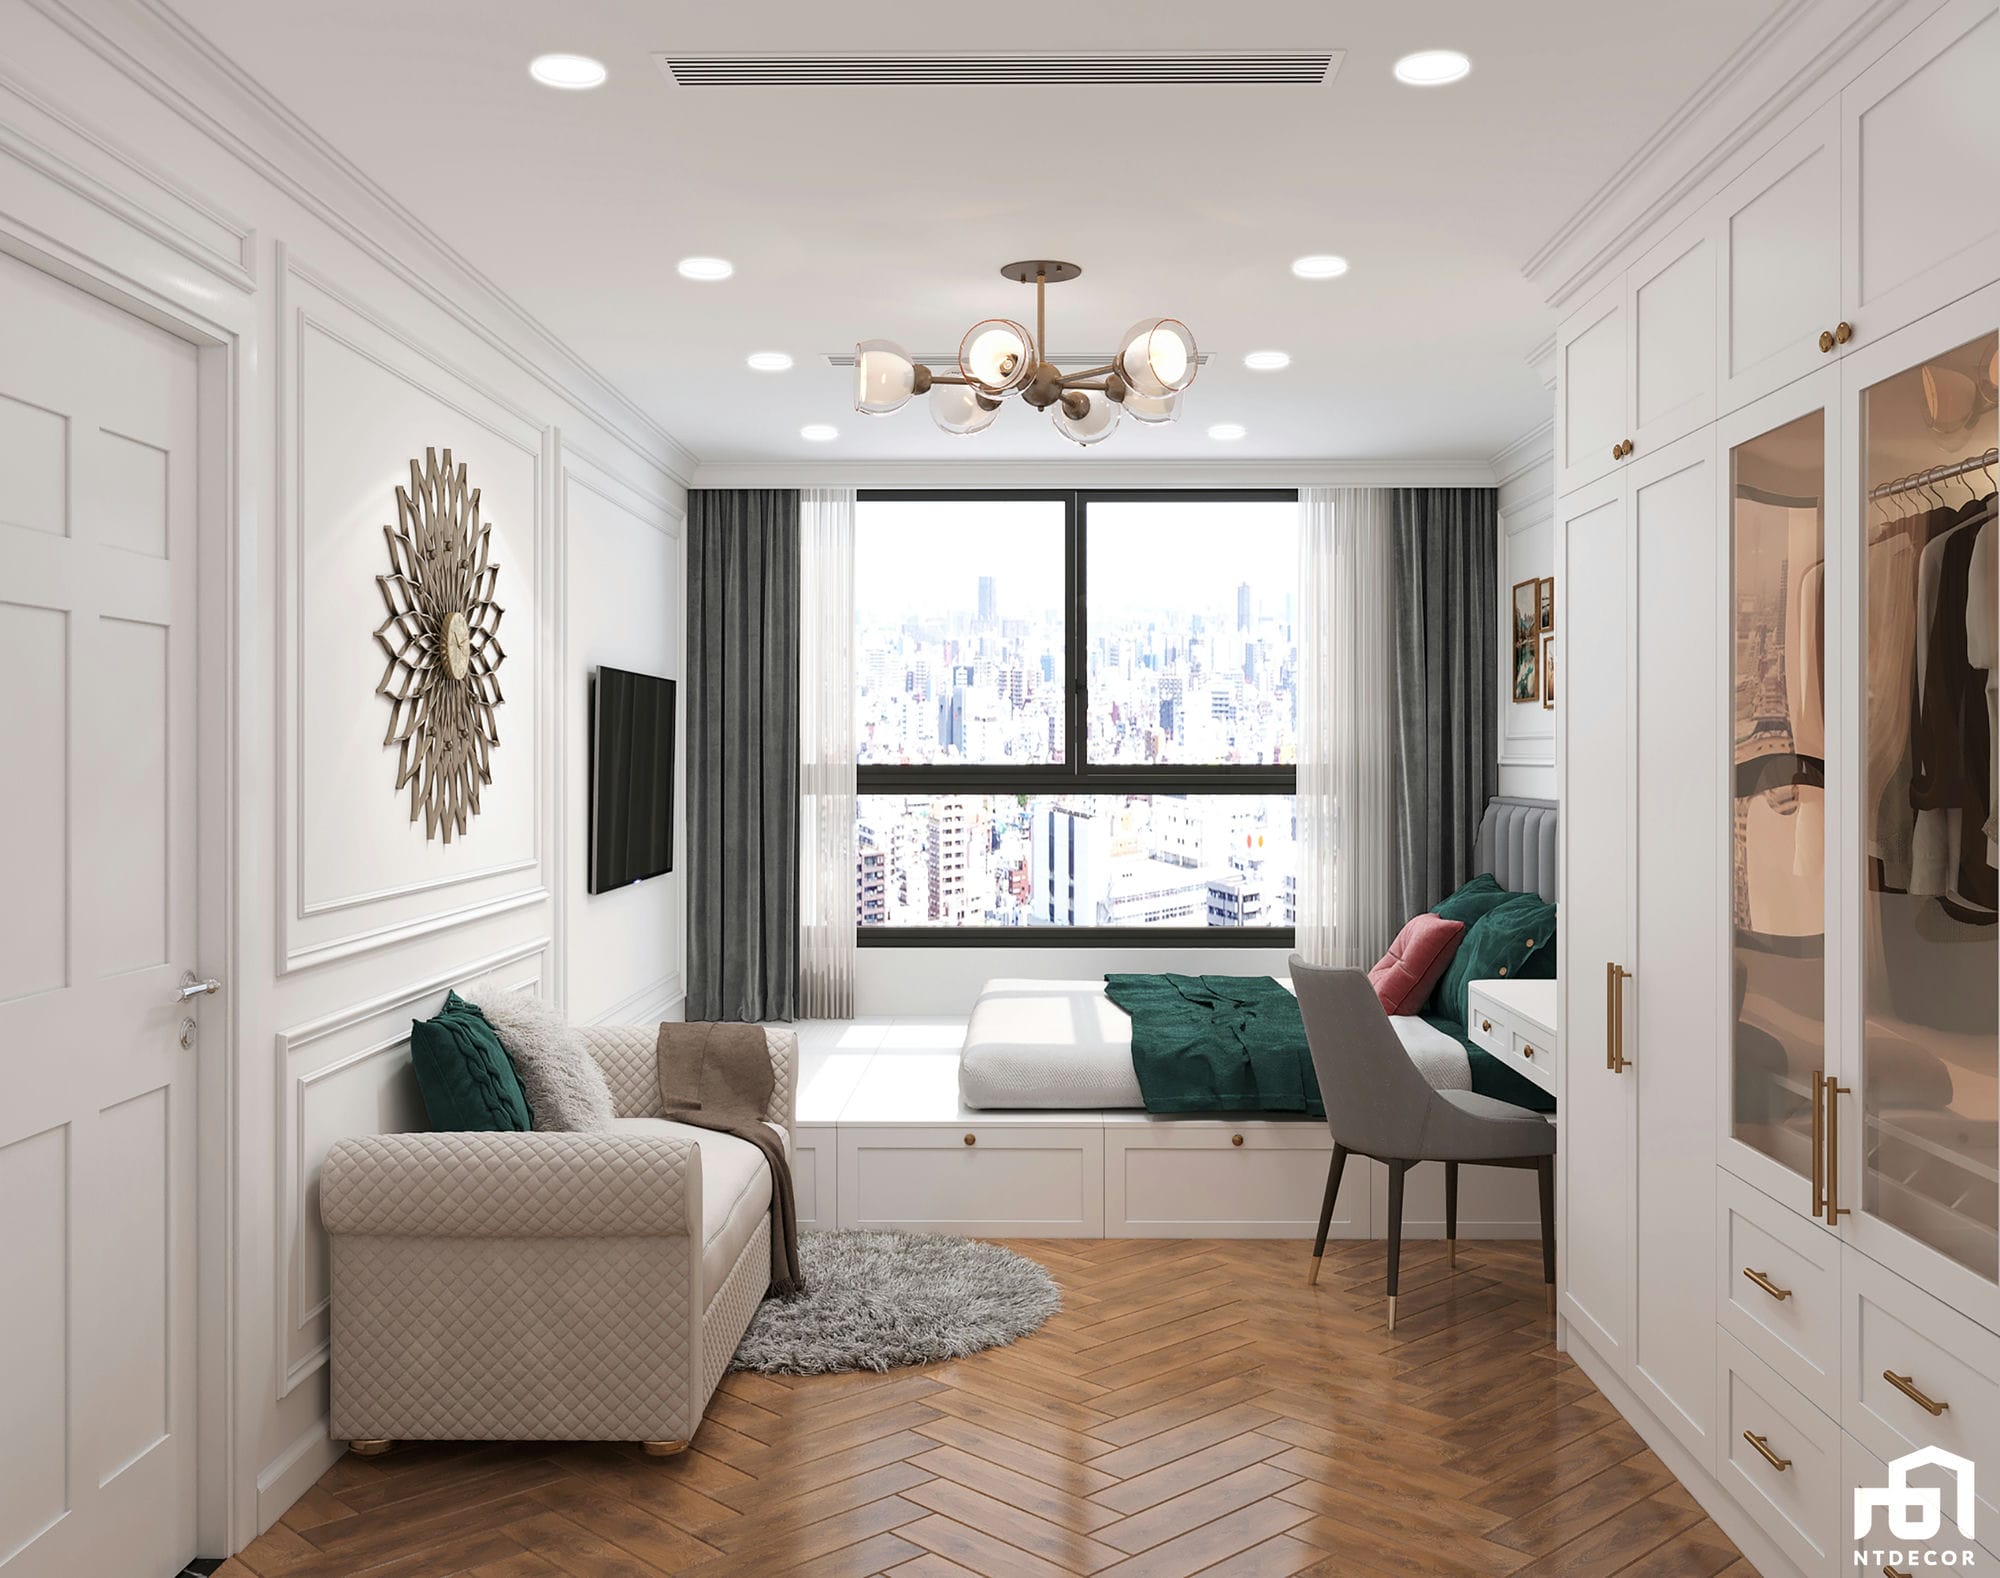 Master Bedroom 3D Design of Kingston Residence Apartment | NTDecor